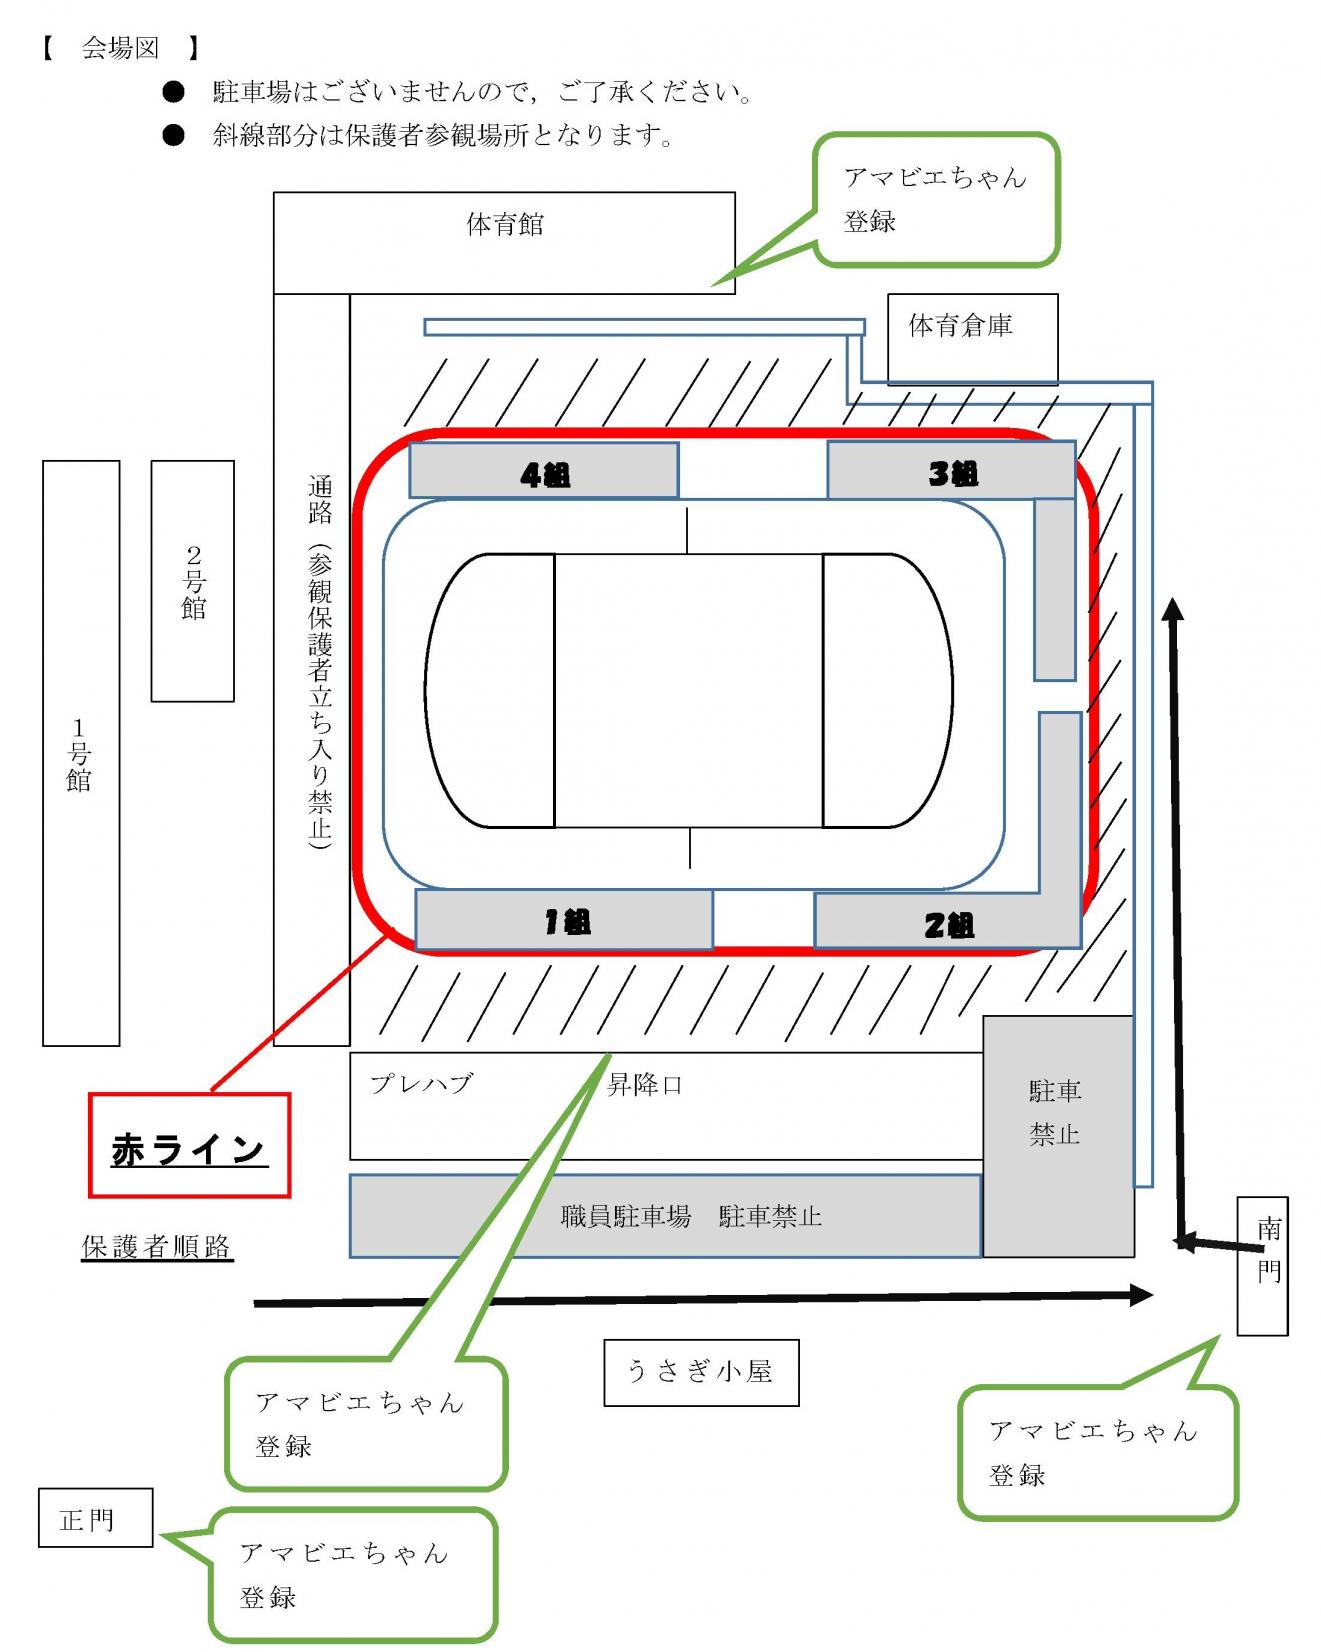 R2.10.29 (メール用) ミニスポーツ大会会場図2